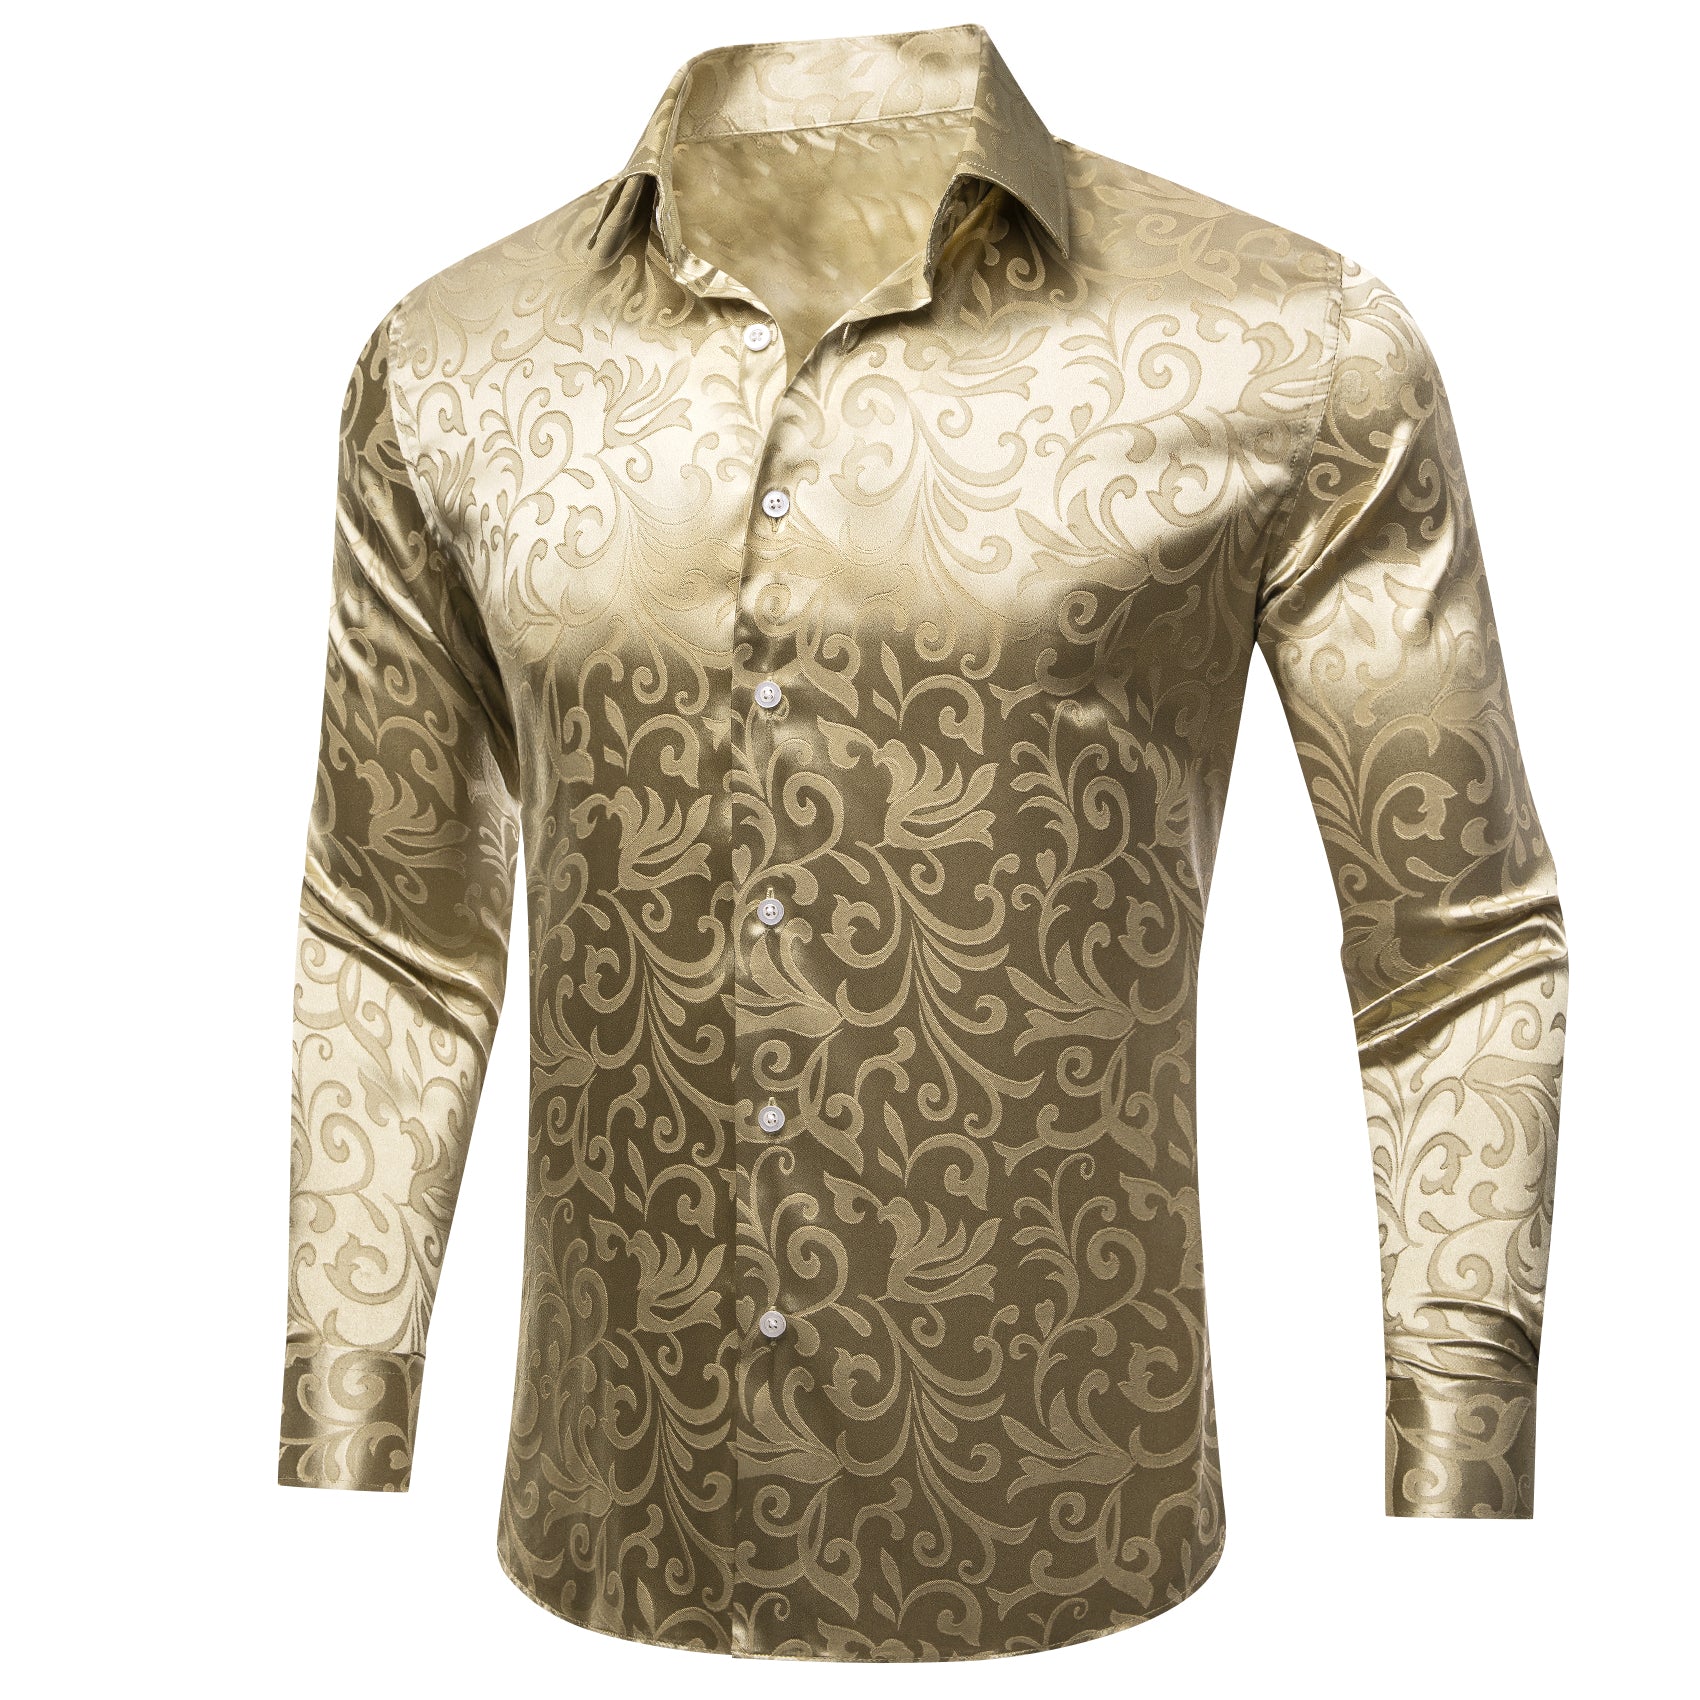 Barry.wang Button Down Shirt Jasmine Jacquard Floral Silk Men's Shirt